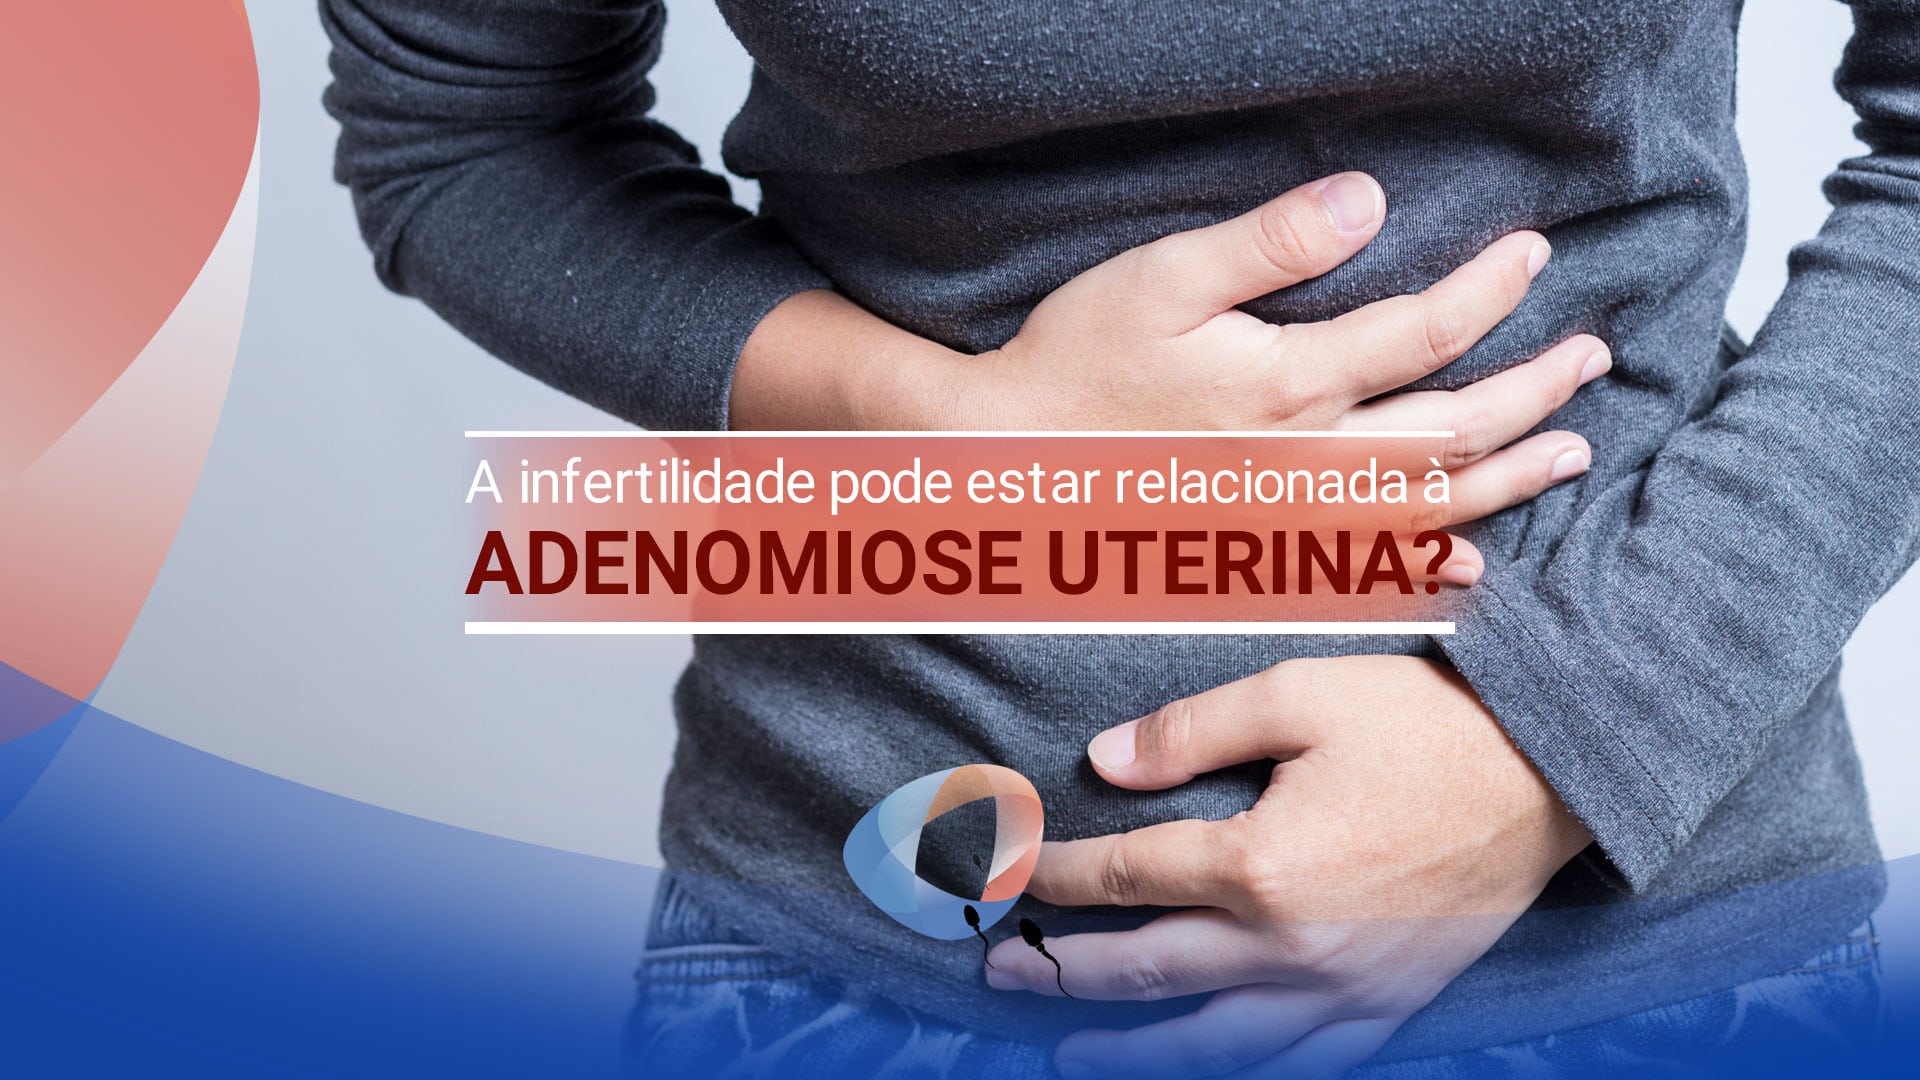 A infertilidade pode estar relacionada à adenomiose uterina?